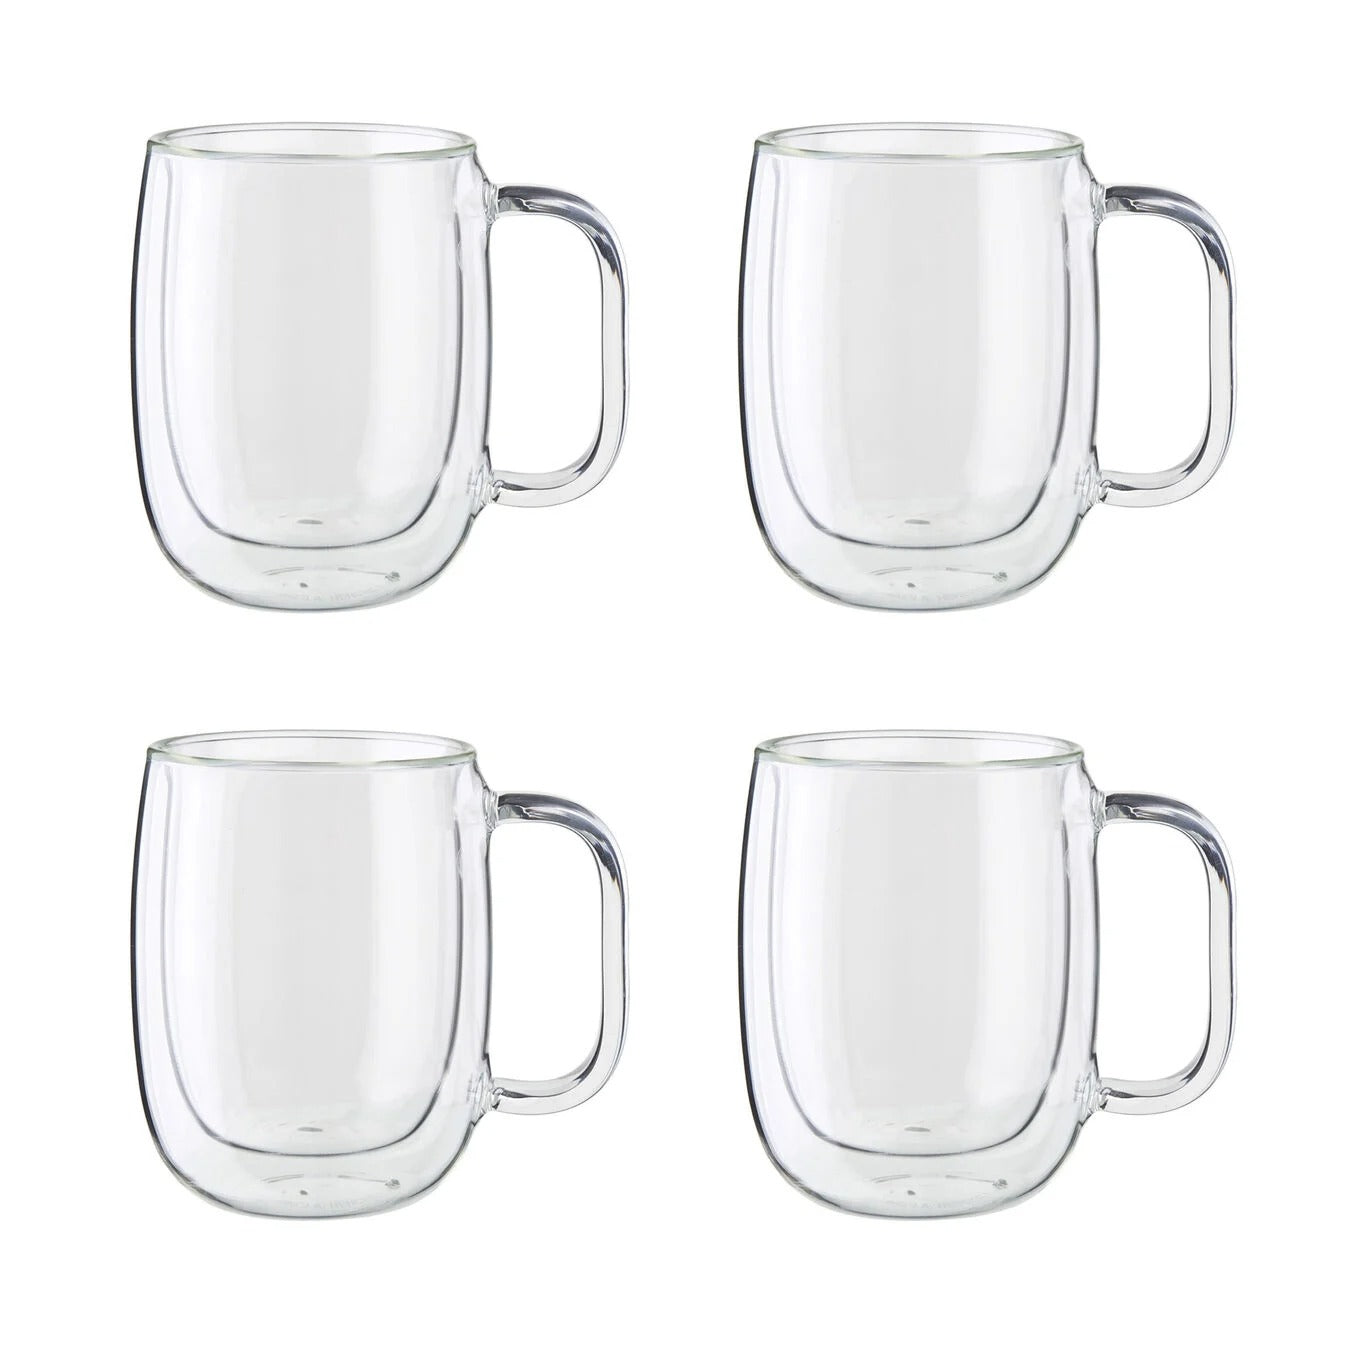 Buy ZWILLING Sorrento Double Wall Glassware Mug set